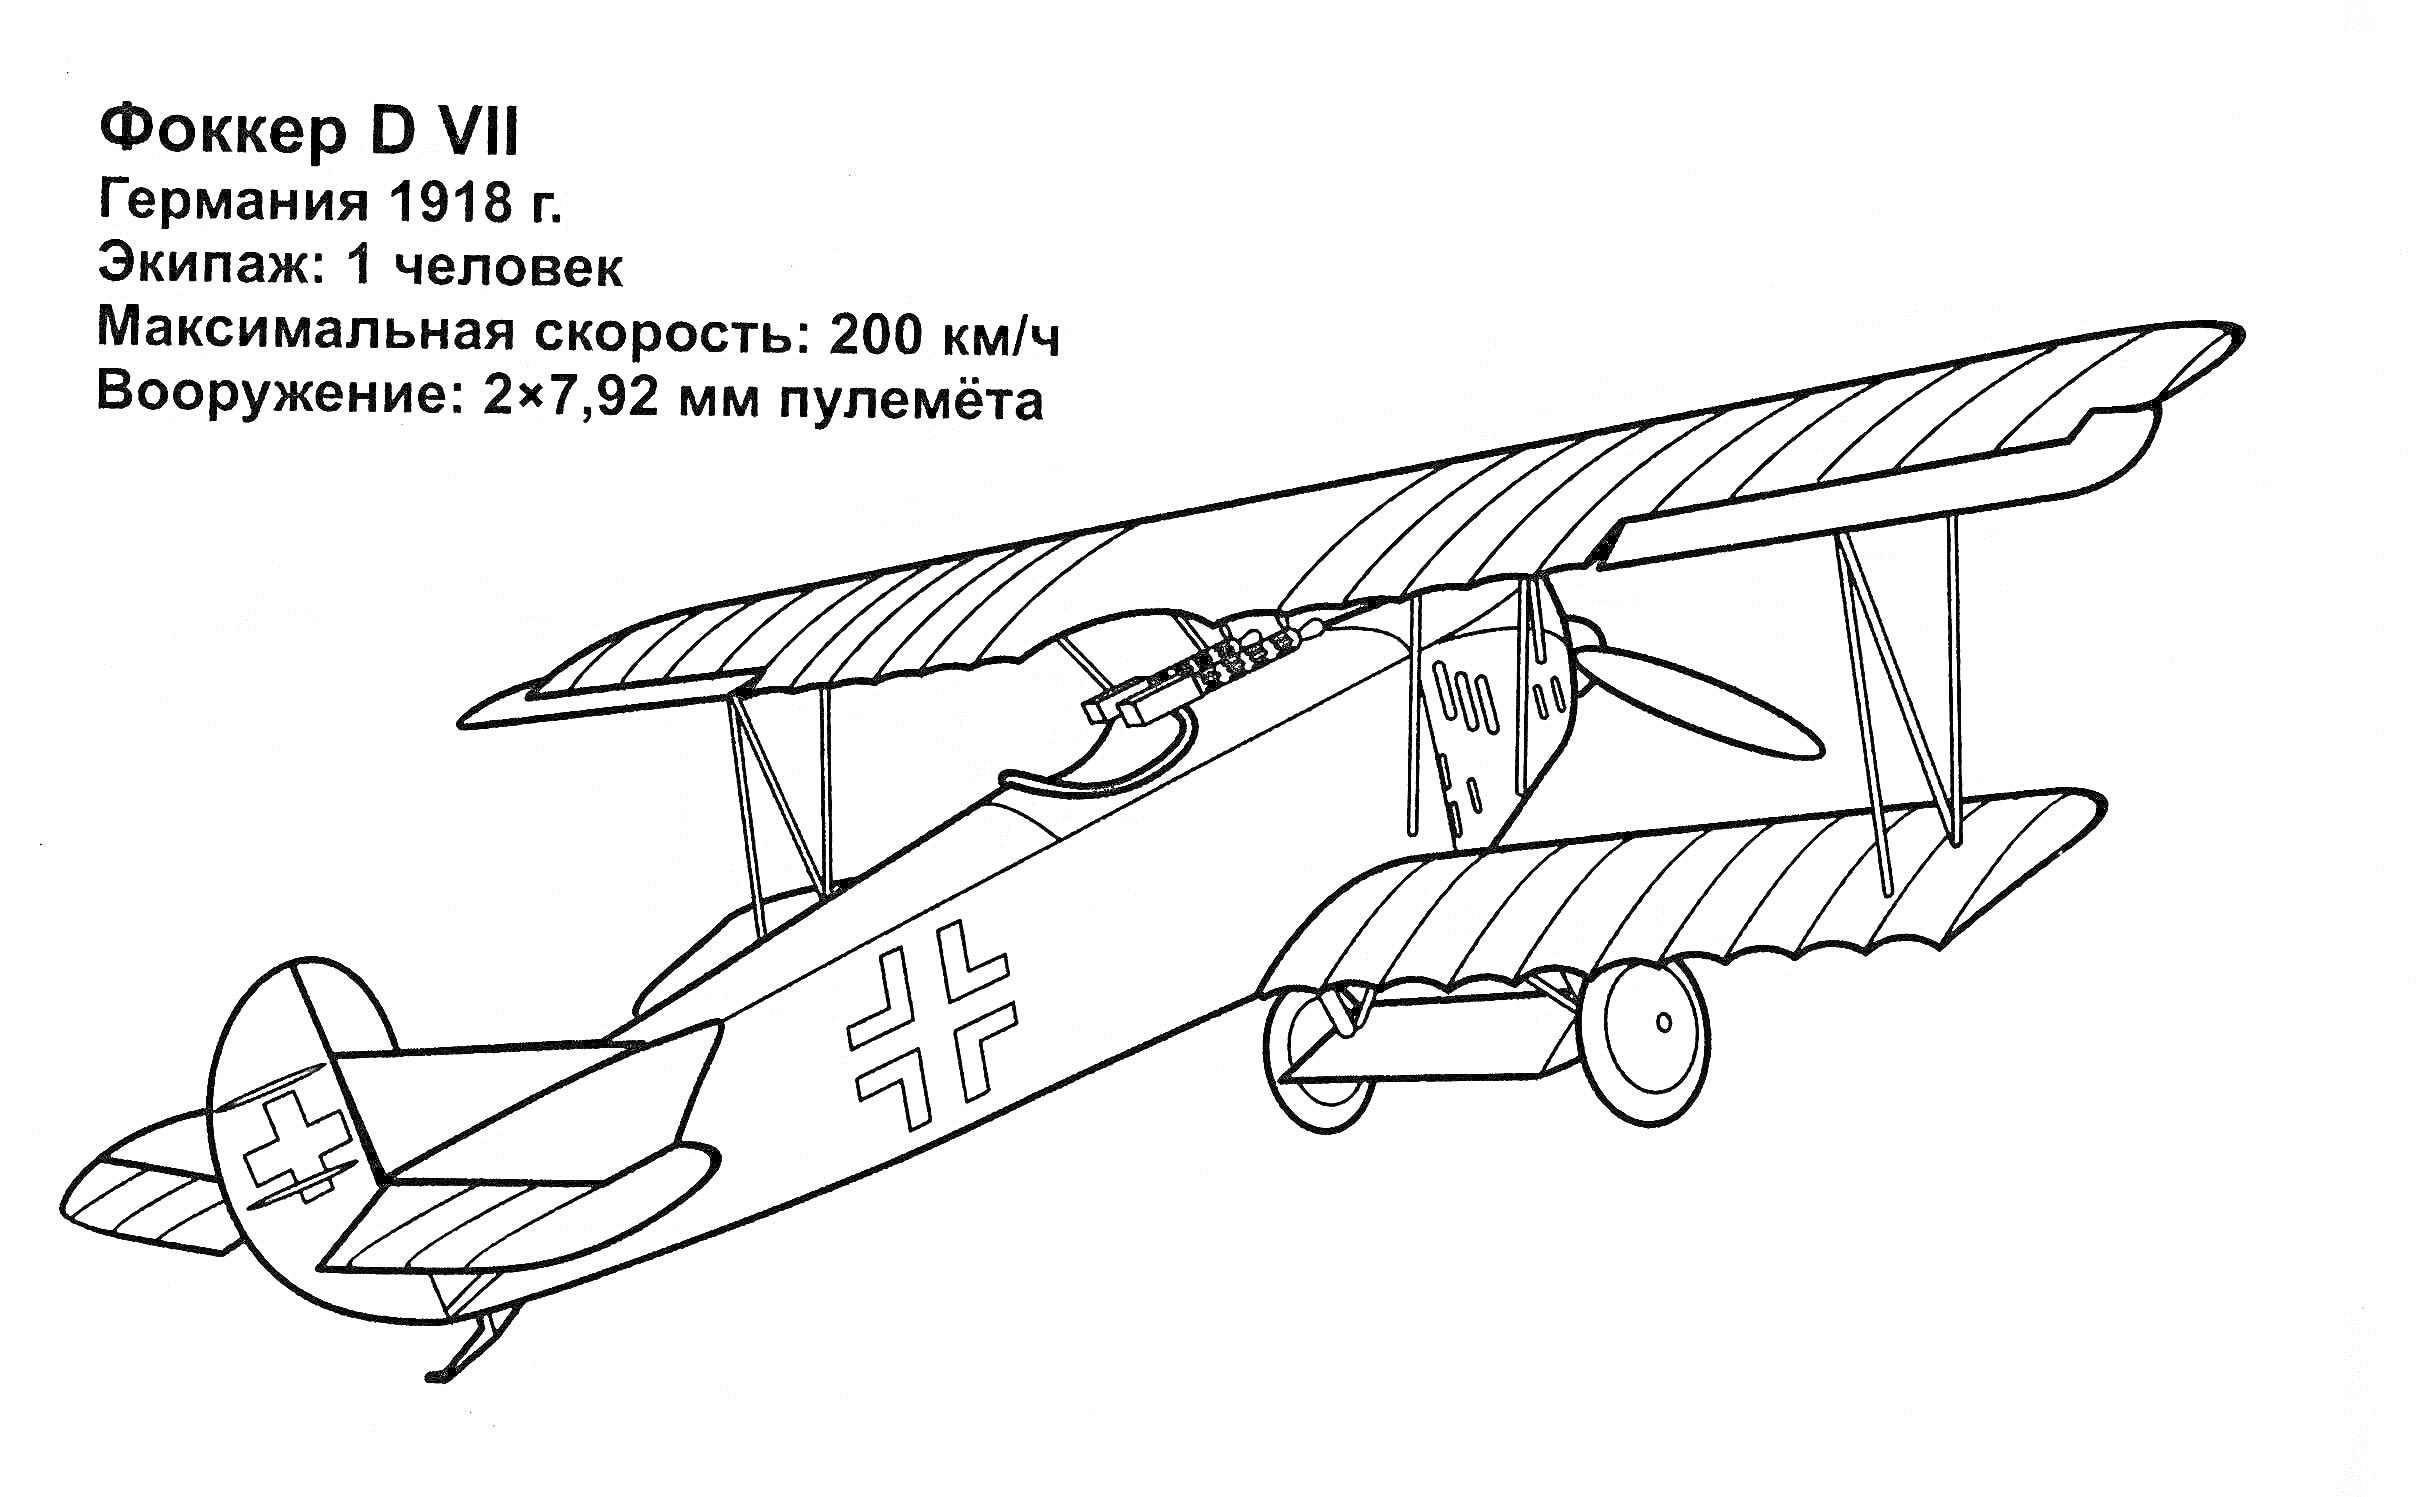 Раскраска Военный самолёт Fokker D VII с описанием характеристик. На изображении видно биплан с крестами на крыльях и фюзеляже, пилот в кабине, а также текстовая информация о самолёте: 